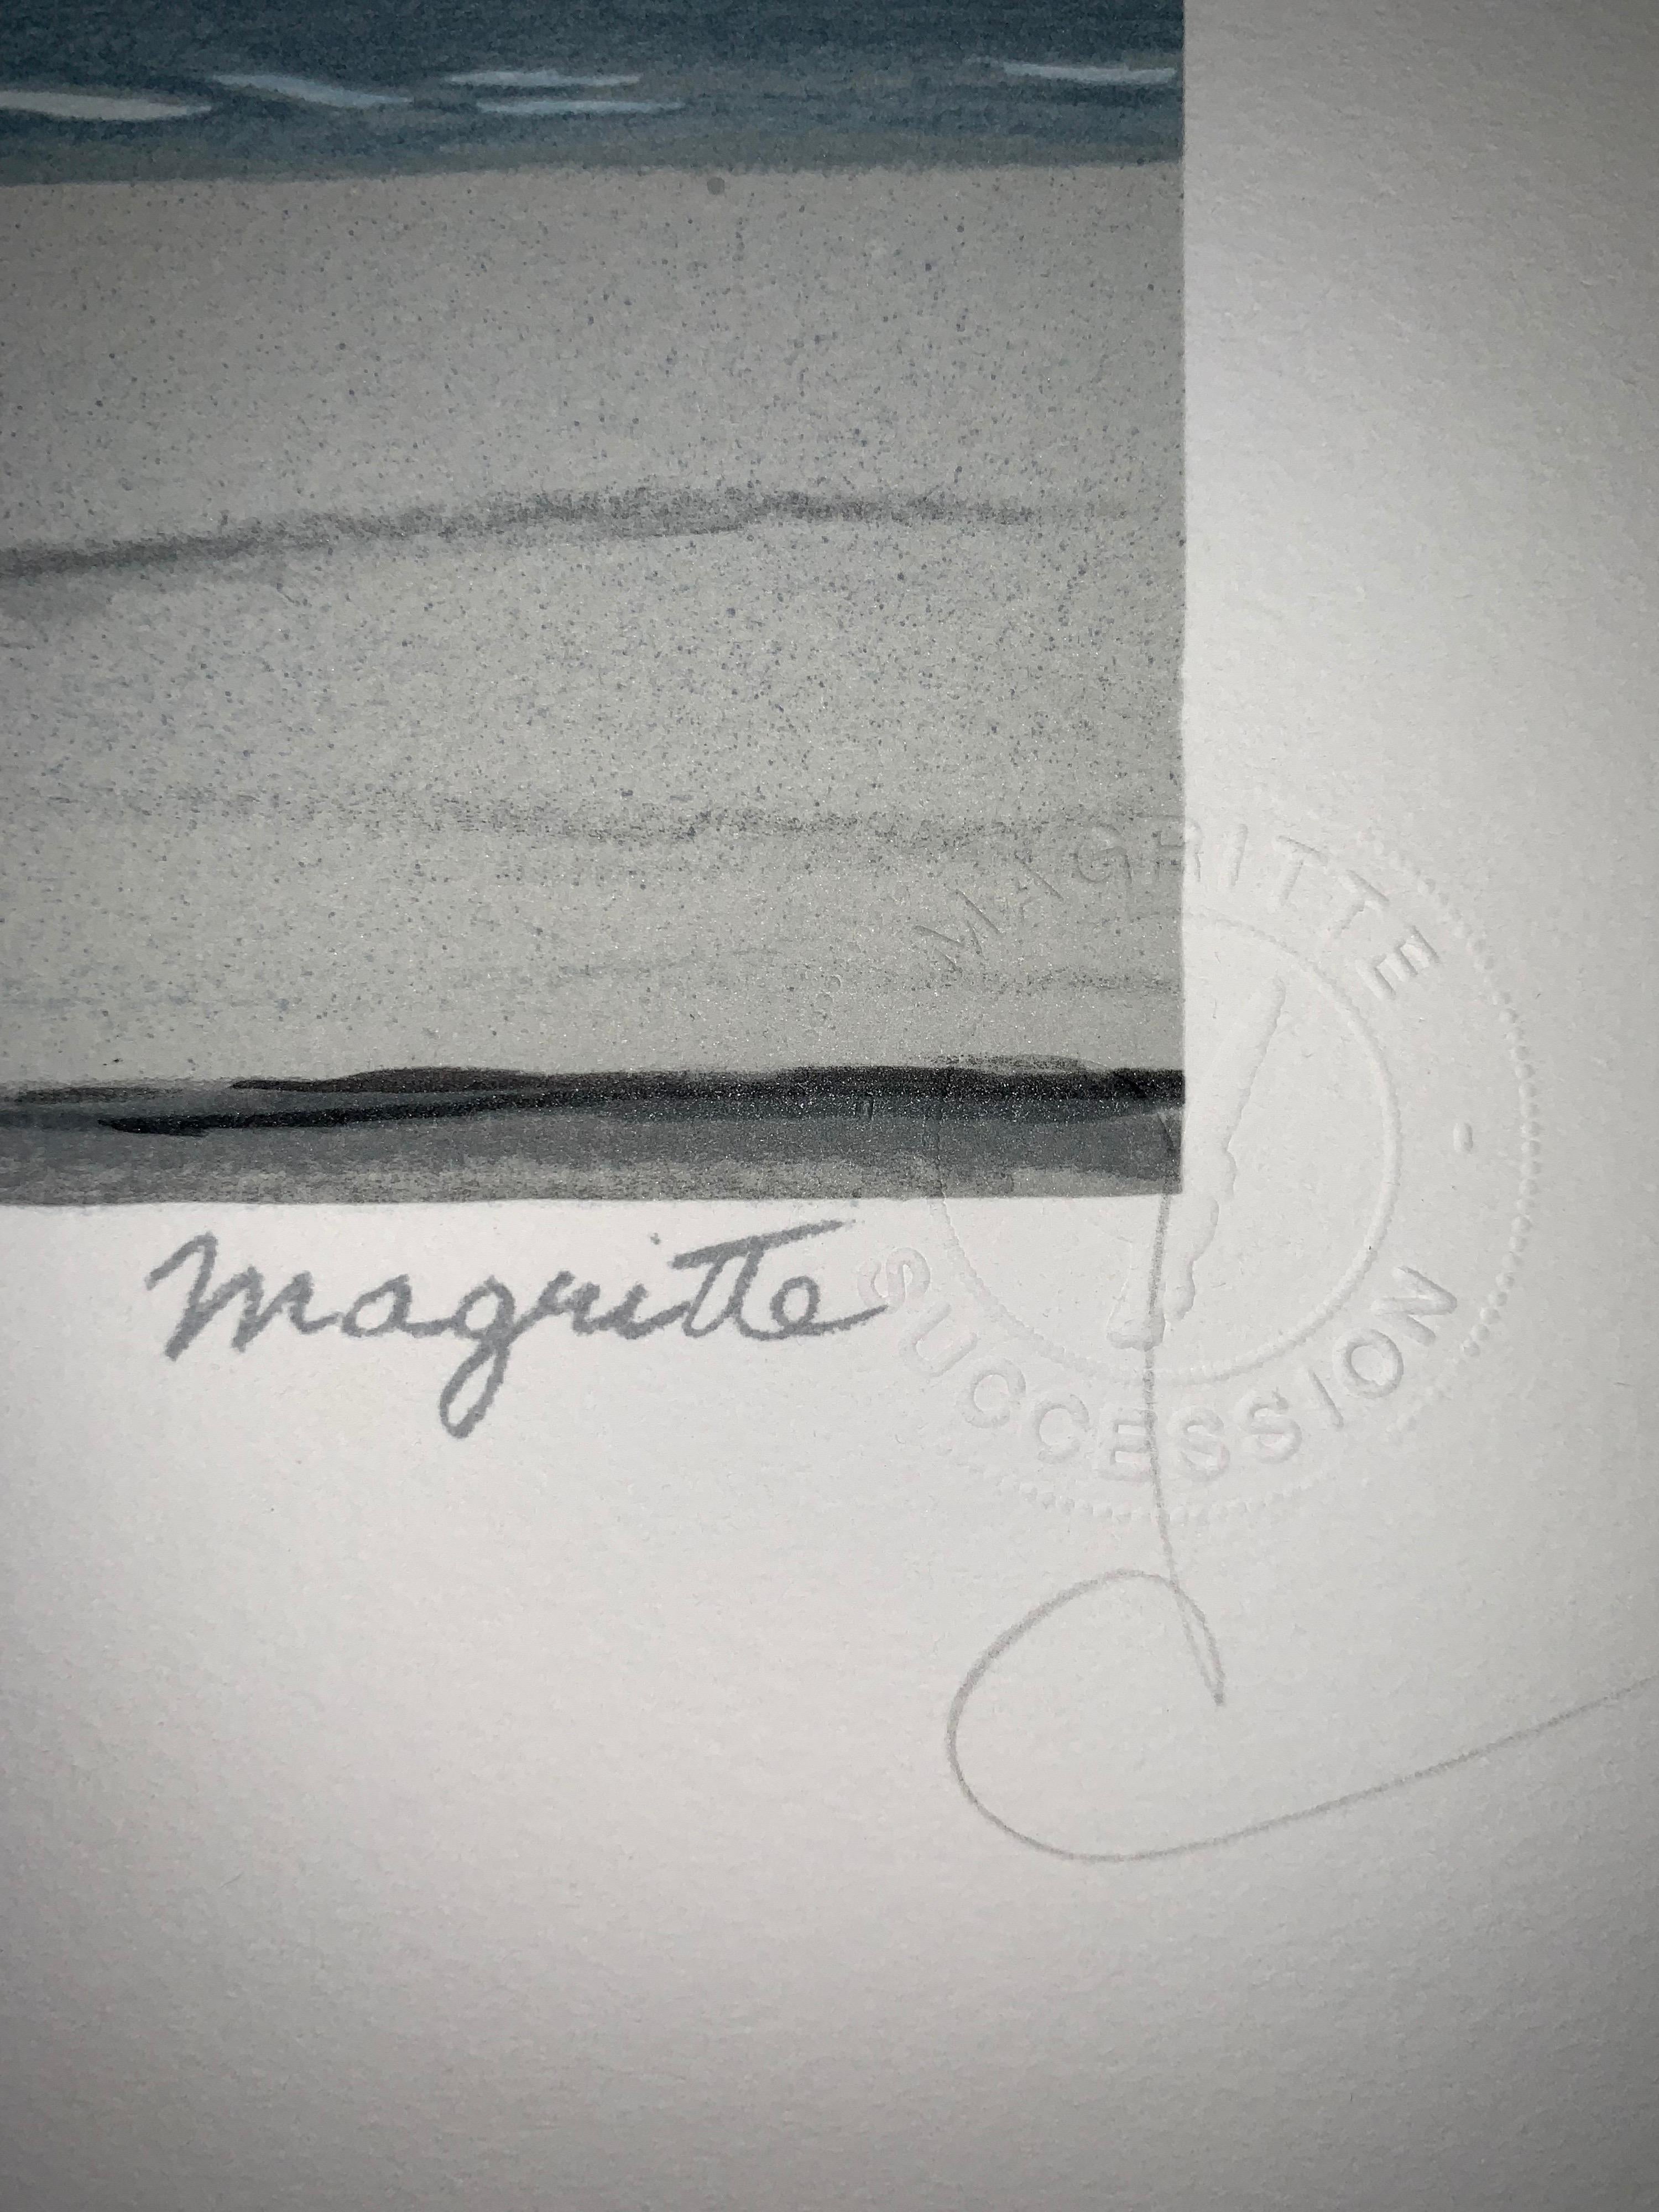 Souvenir de Voyage - 20. Jahrhundert, Surrealistisch, Lithographie, figurativer Druck (Grau), Figurative Print, von (after) René Magritte